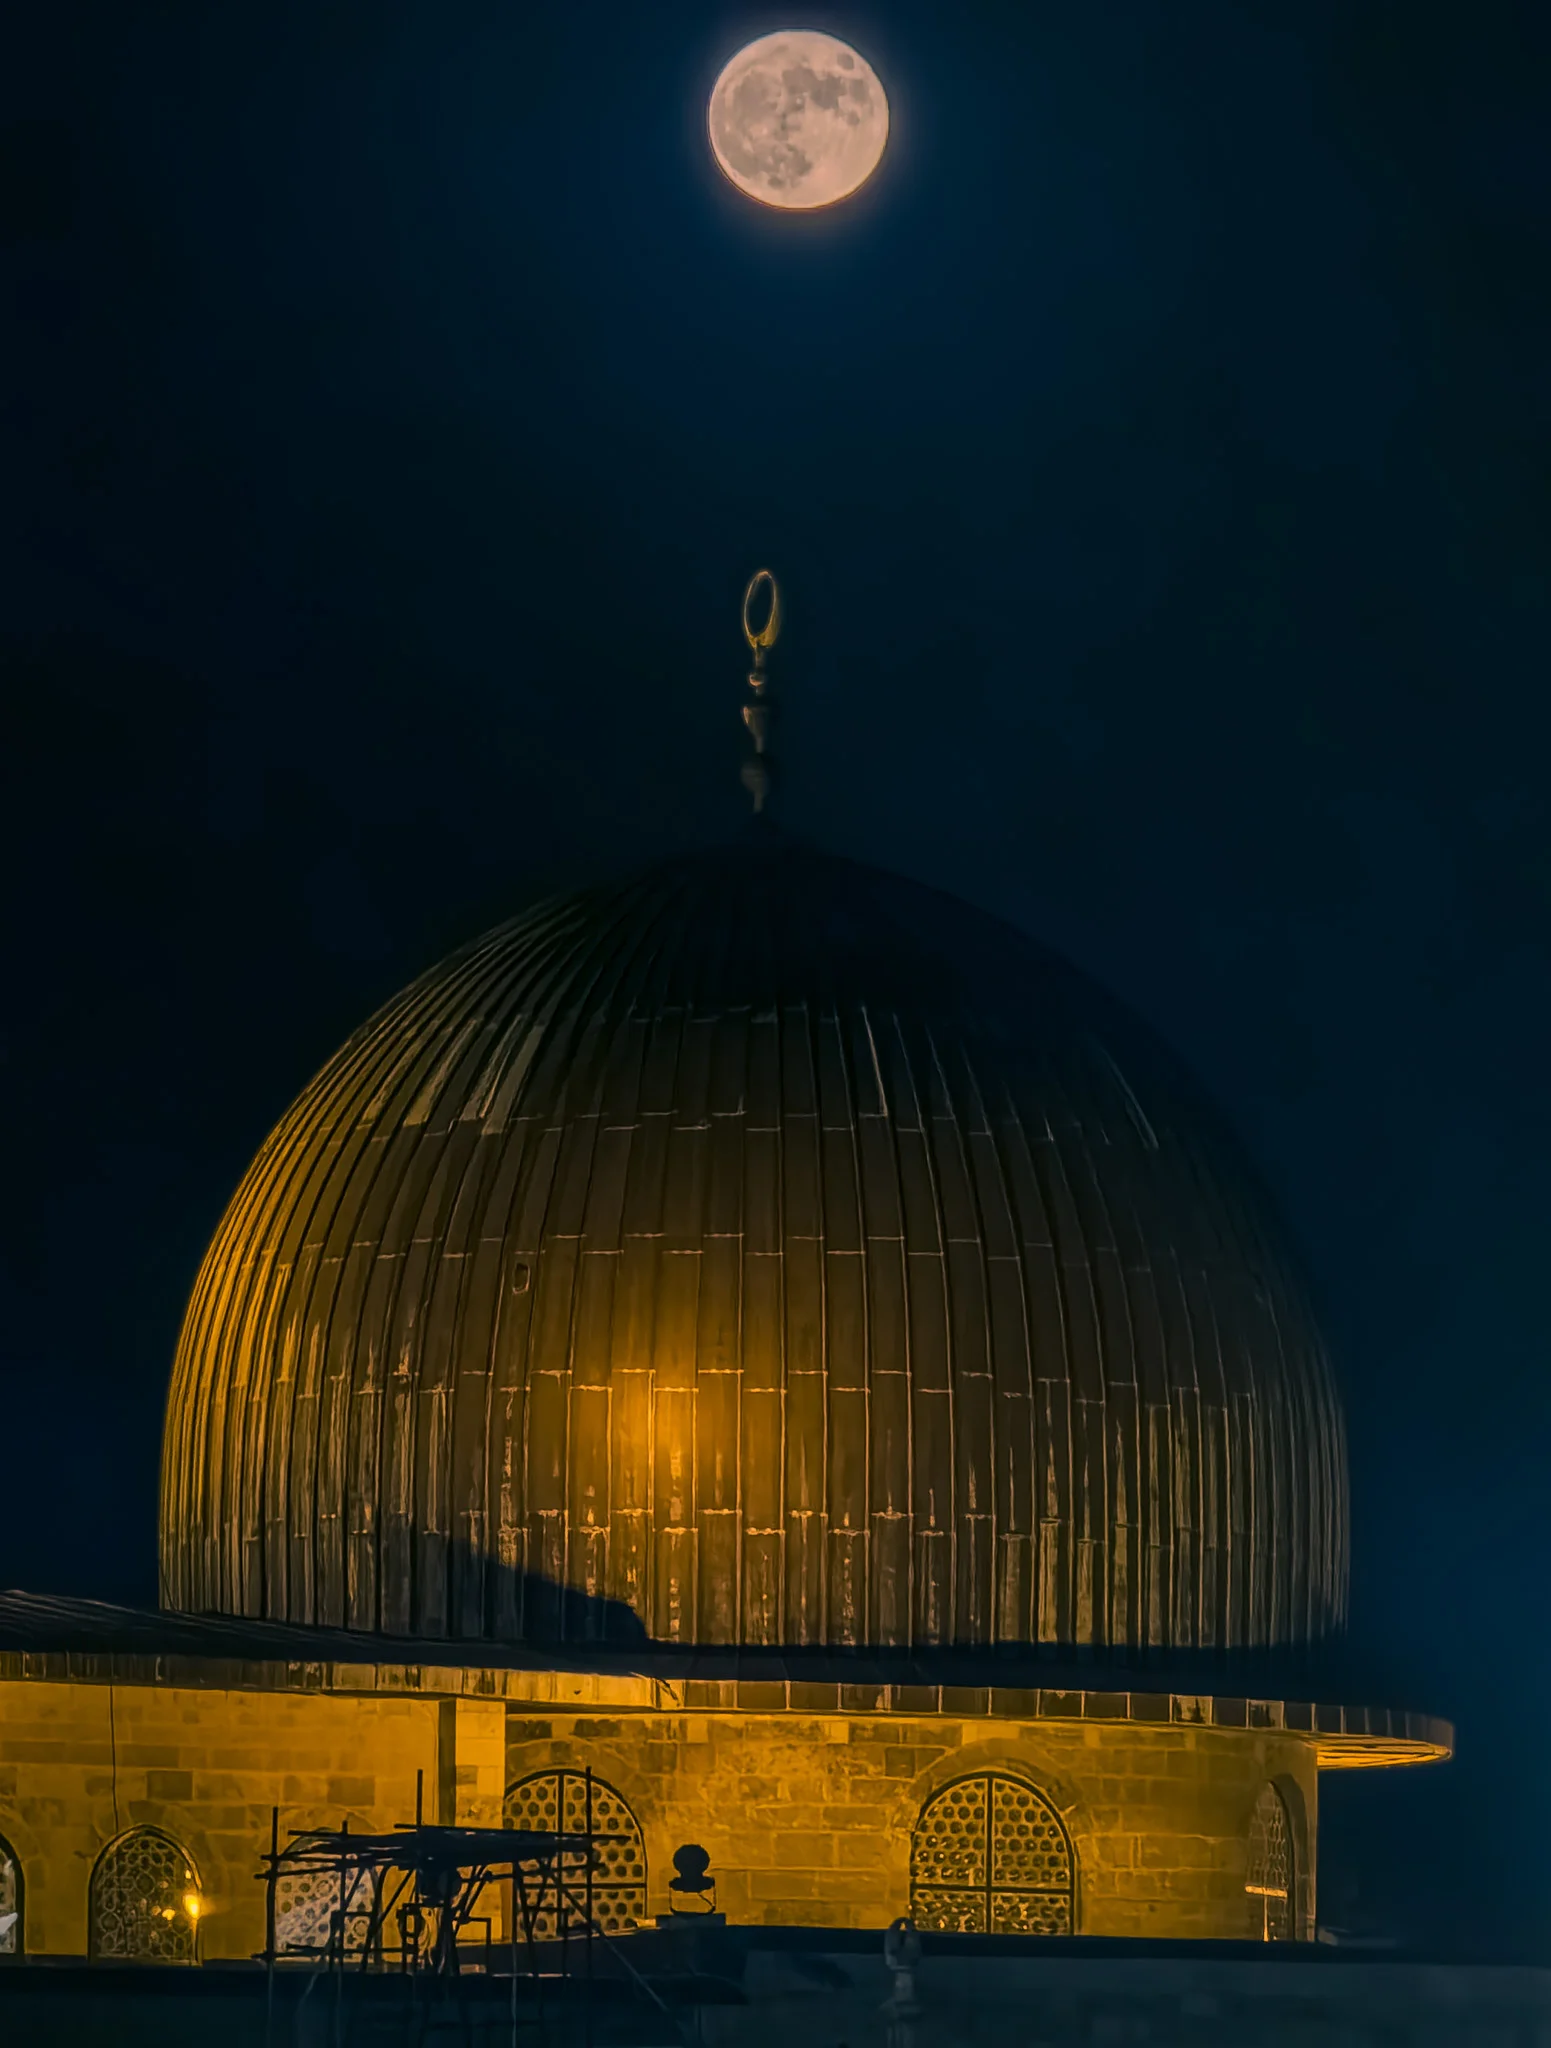 ירח מלא מאיר את שמי הלילה מעל מבנה כיפה עתיק, על רקע העיר העתיקה של ירושלים